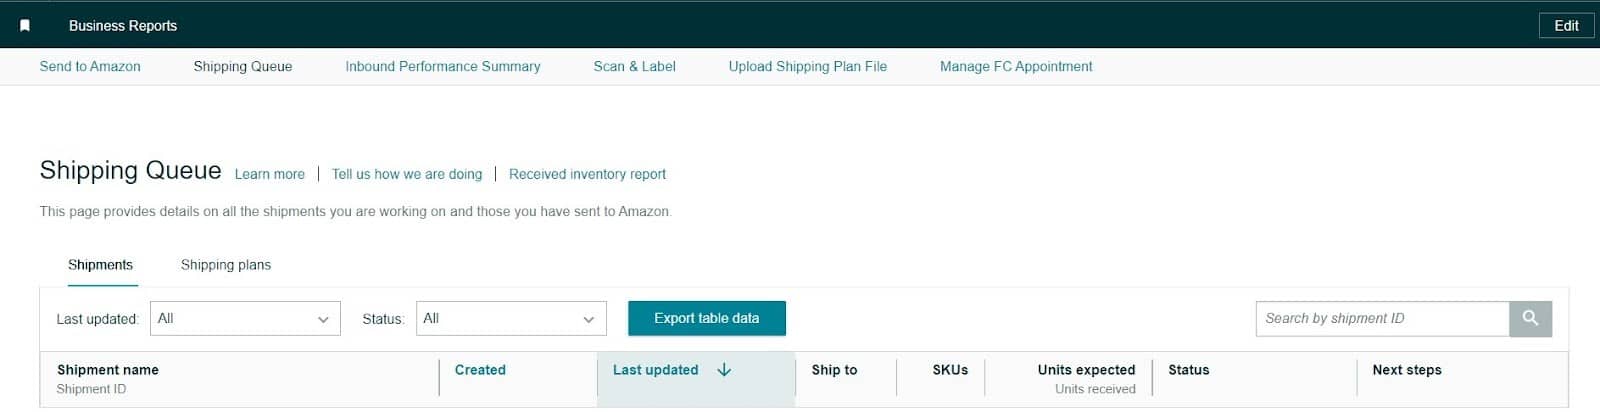 Amazon shipping queue